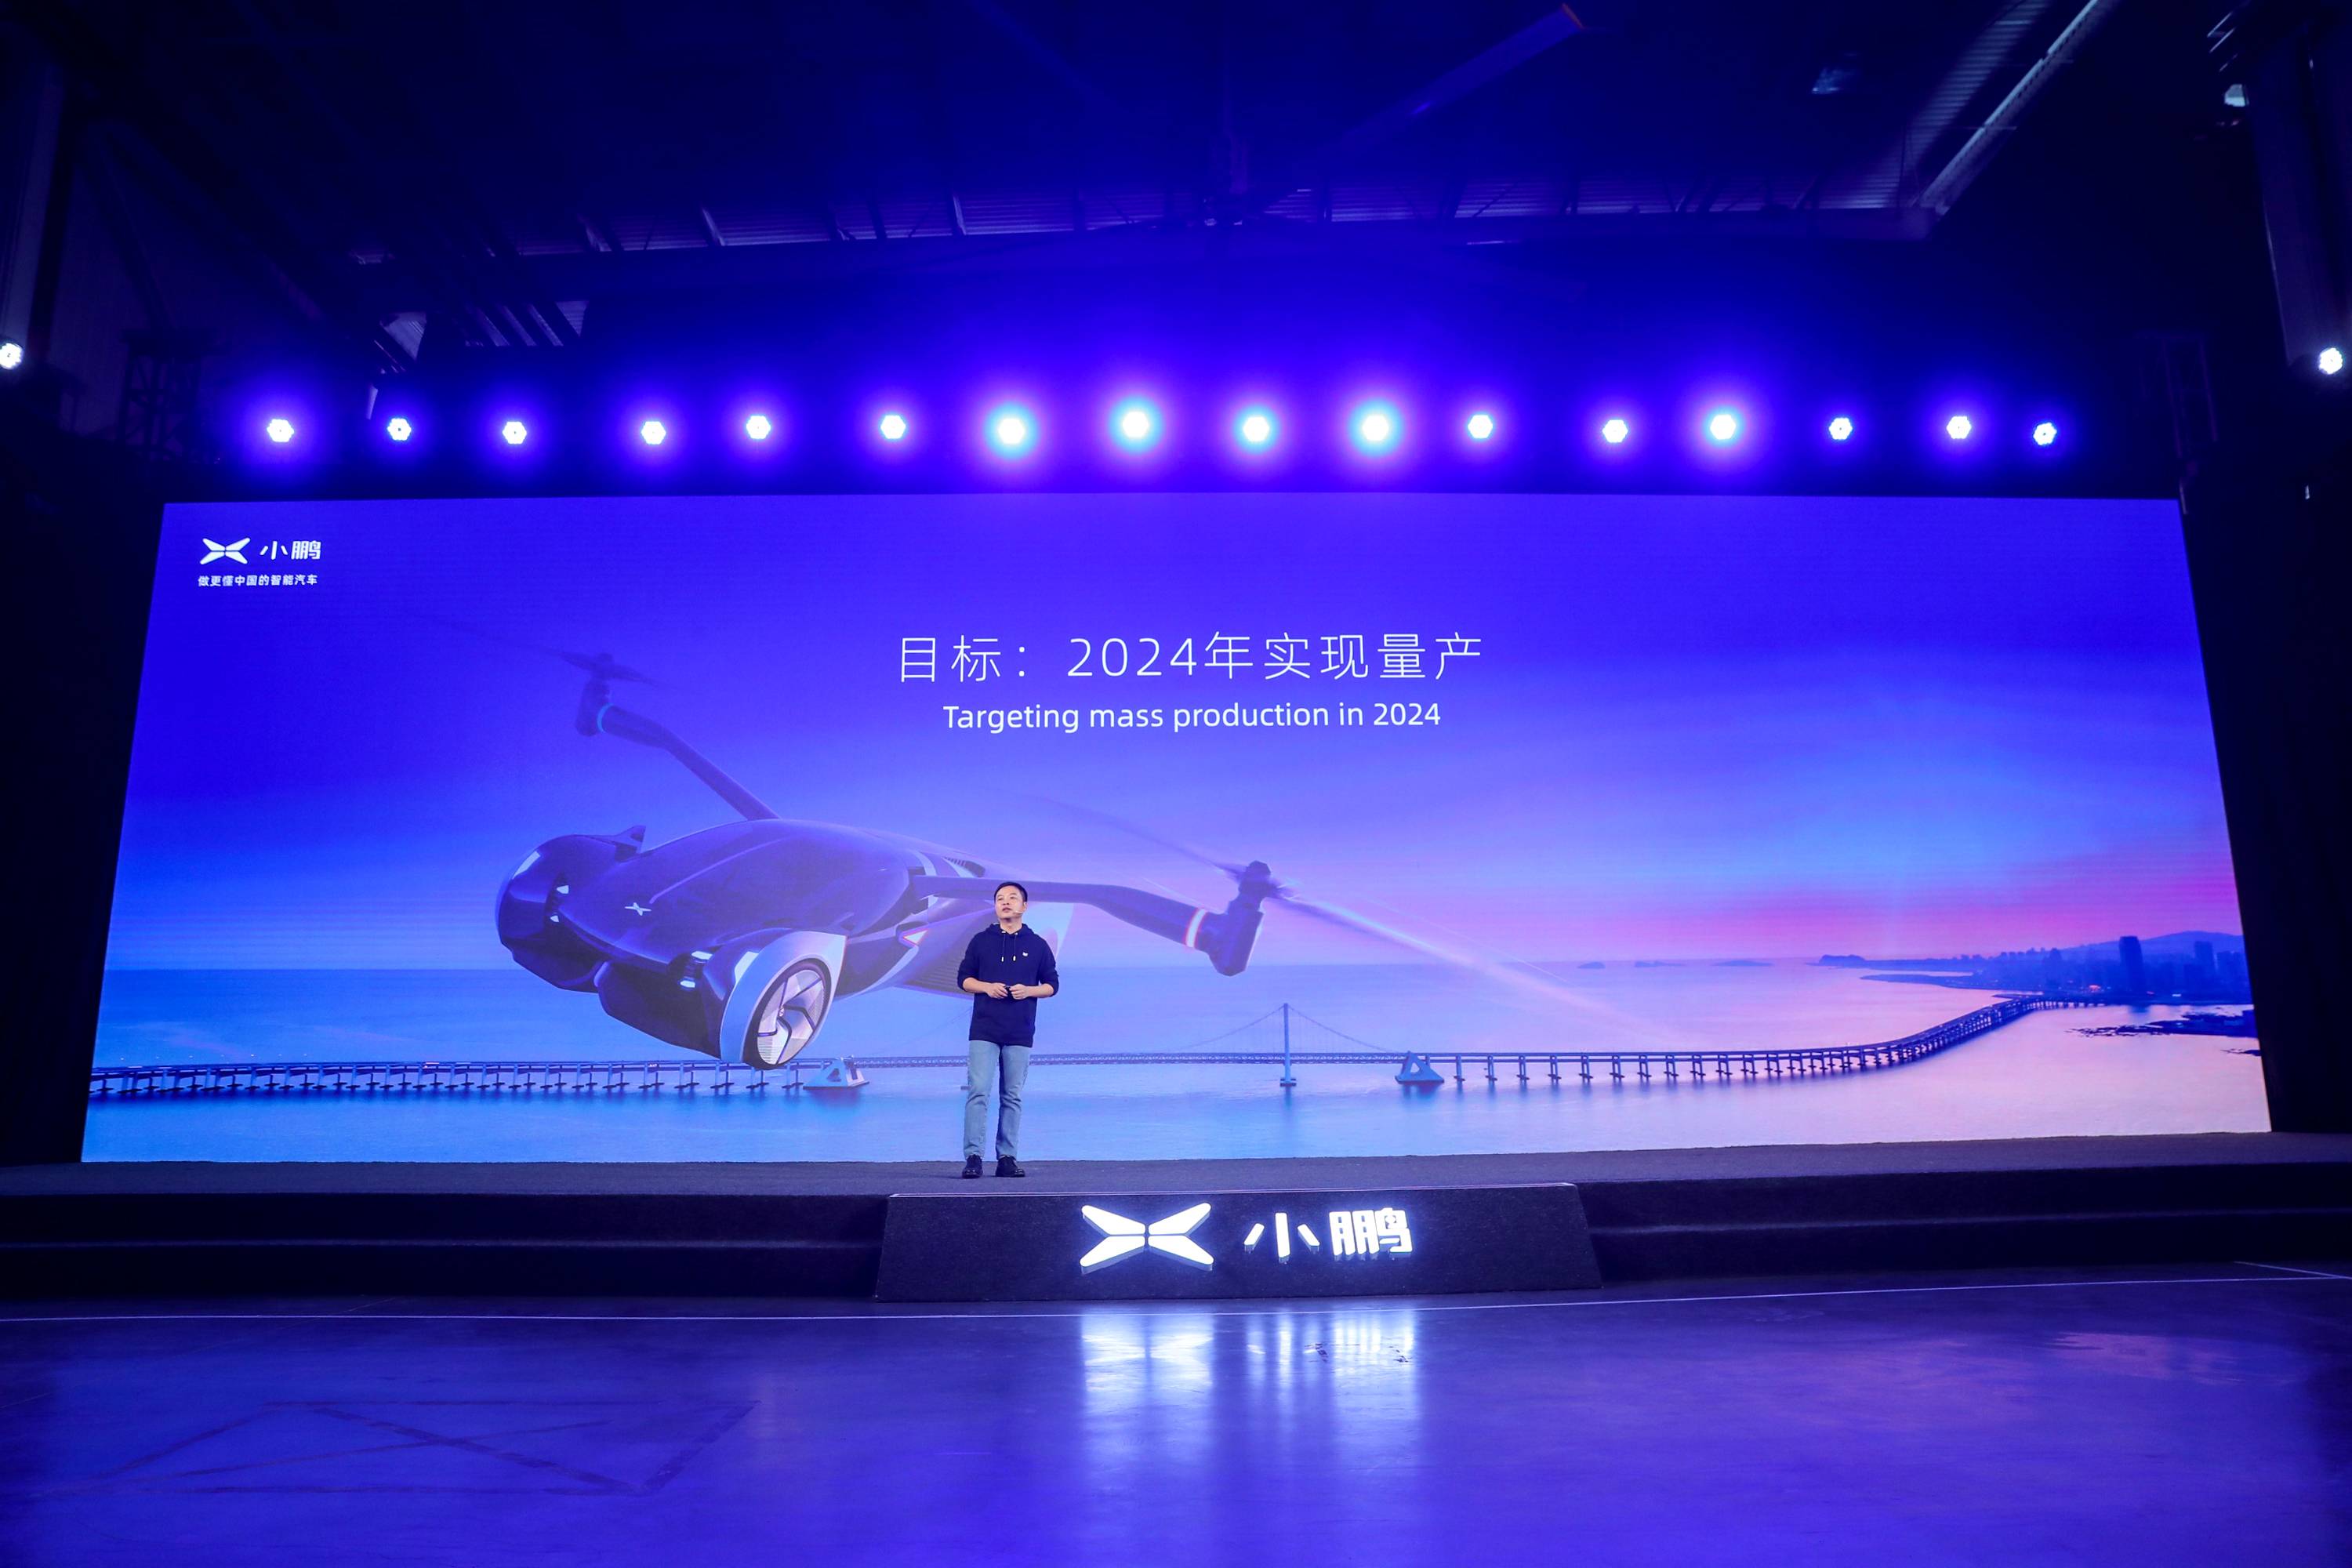 17 4 - Xiaopeng Automobile Technology Day: oltre alla “Super Recharge” che percorre 200 chilometri in 5 minuti, c’è anche questa macchina volante da un milione di livelli